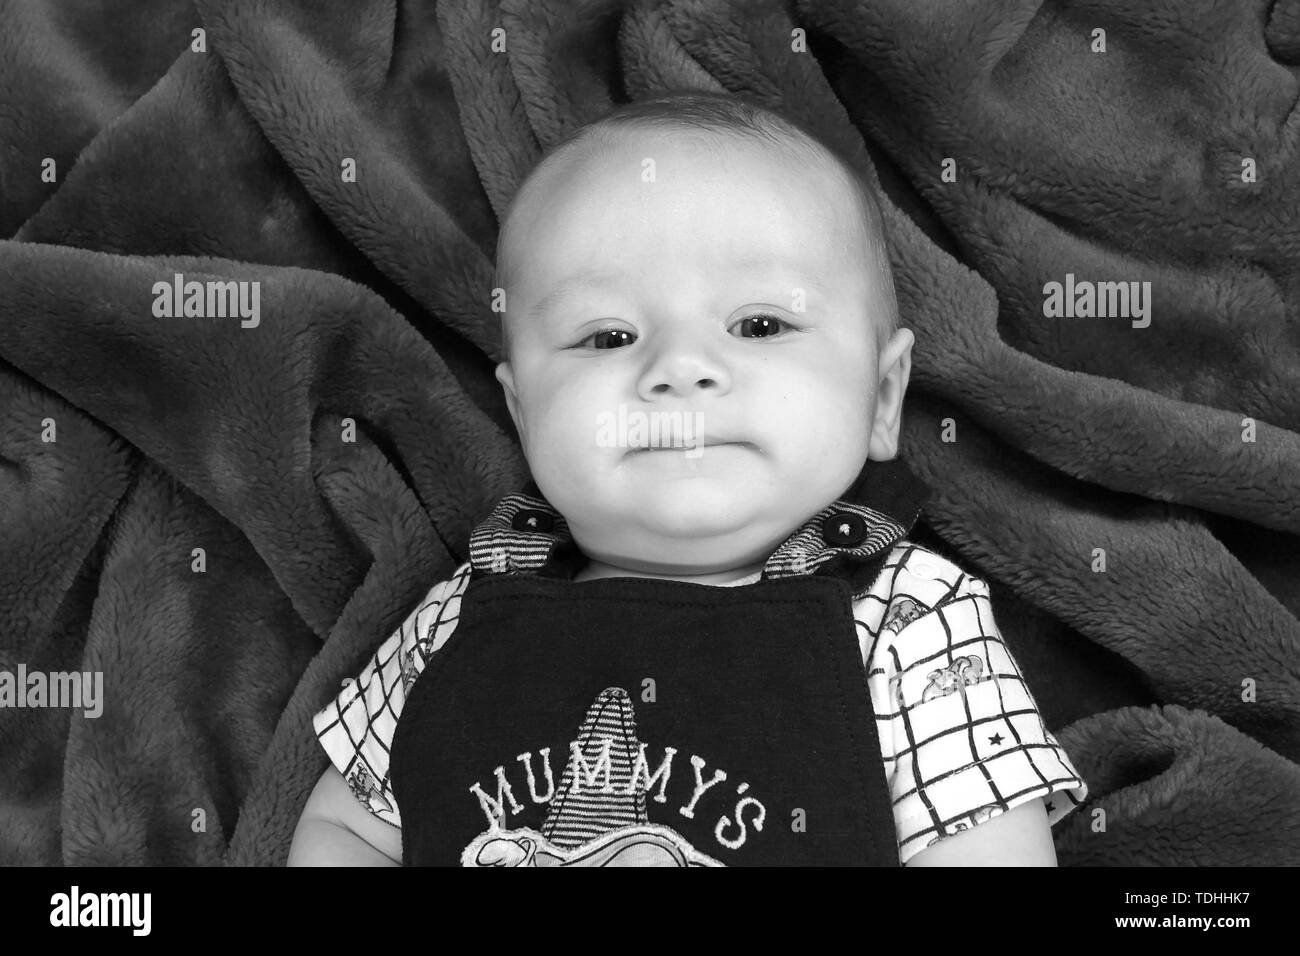 3 mes de edad Baby Boy relajante Foto de stock